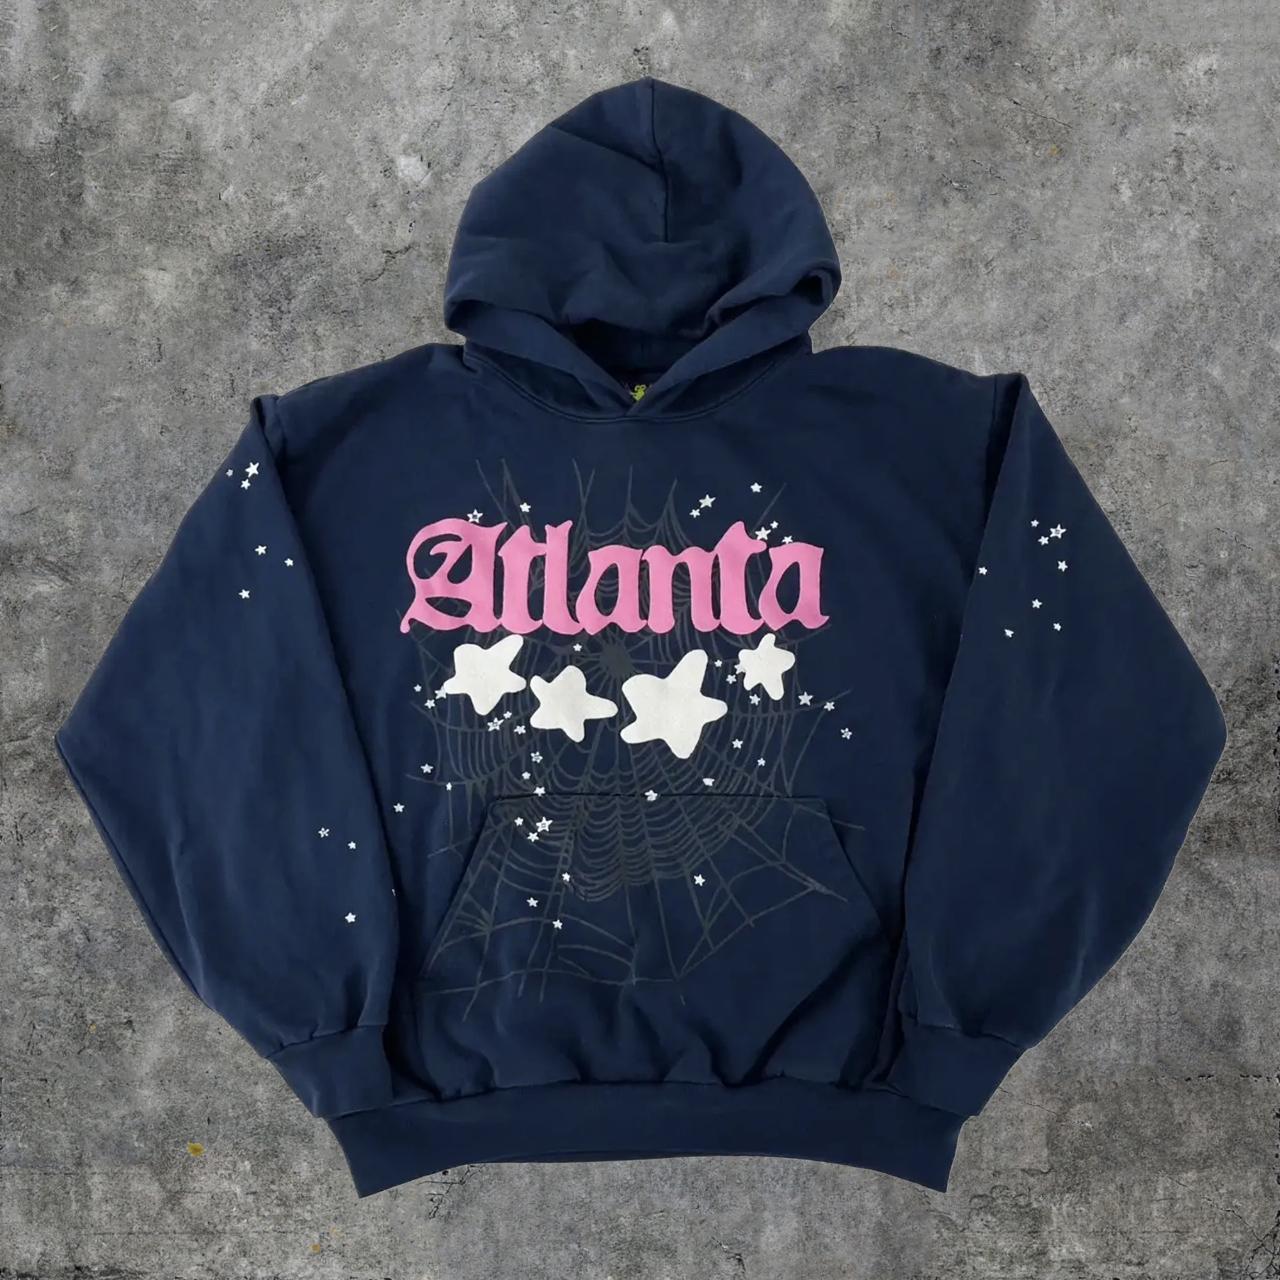 Sp5der Atlanta Navy Hoodie Sweatshirt